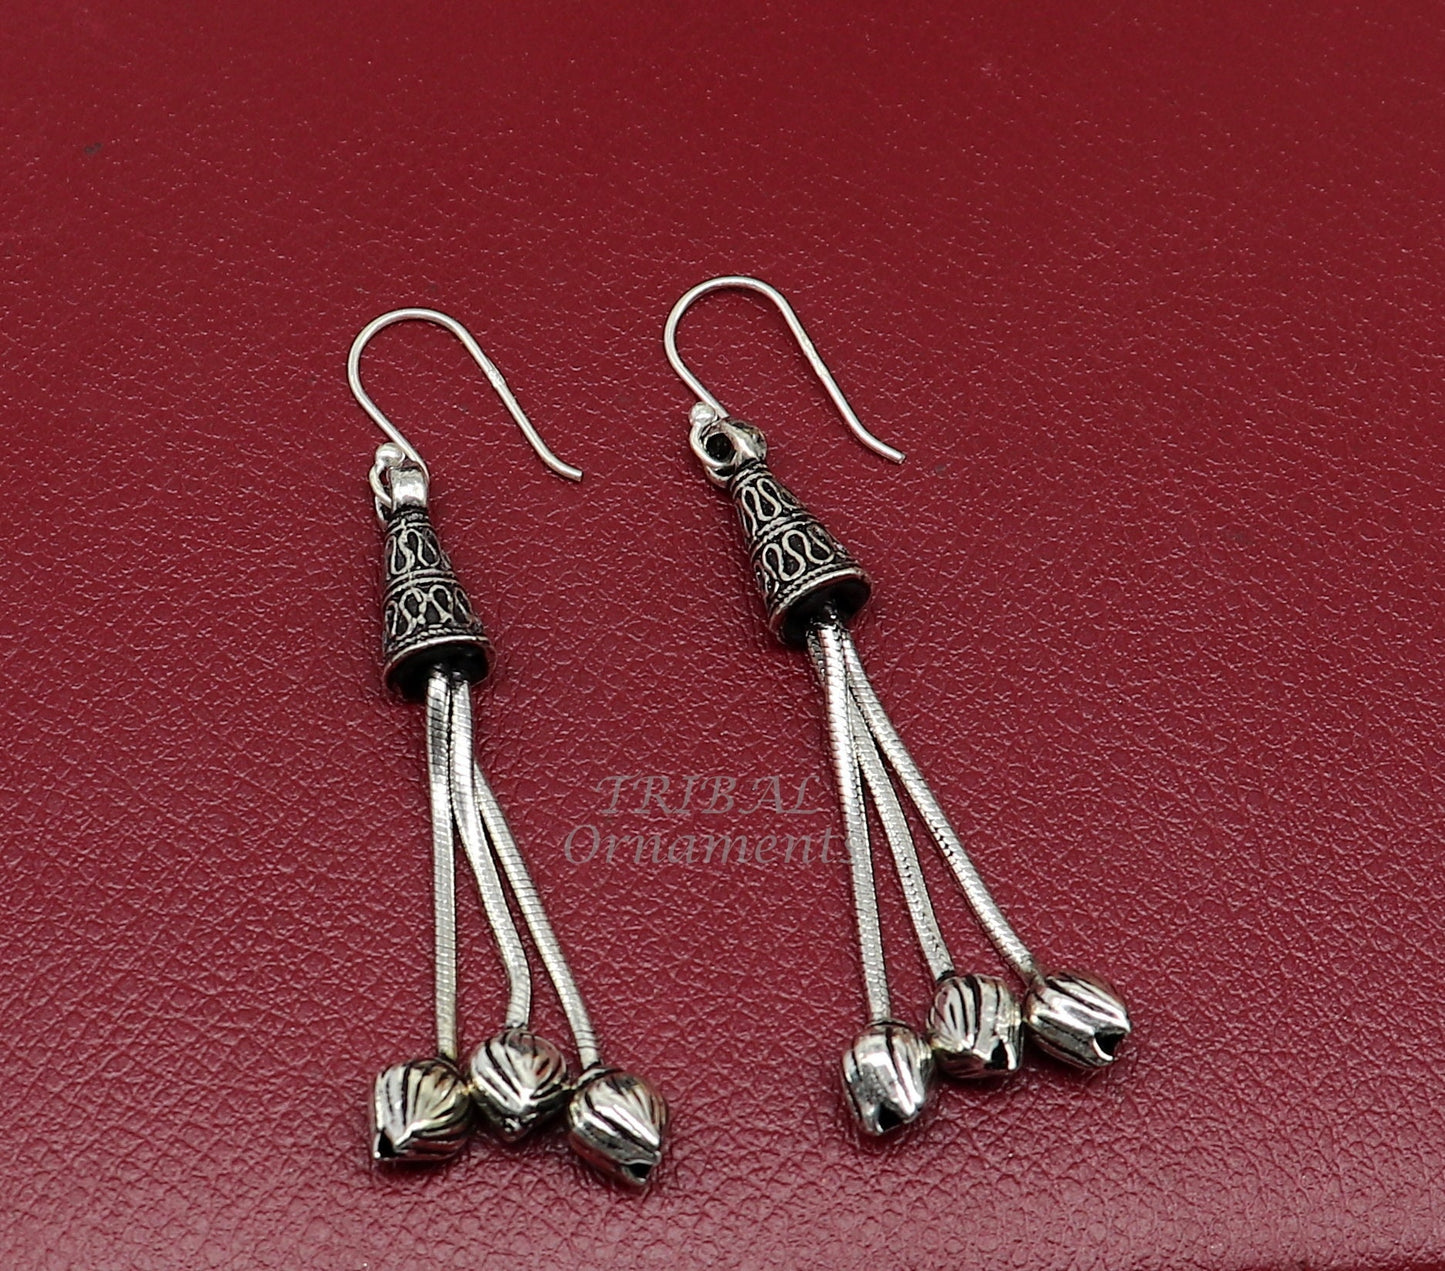 Modern 925 sterling silver handmade fabulous Drop dangling hoops earring, trendy stylish long earring personalized wedding gift s1145 - TRIBAL ORNAMENTS